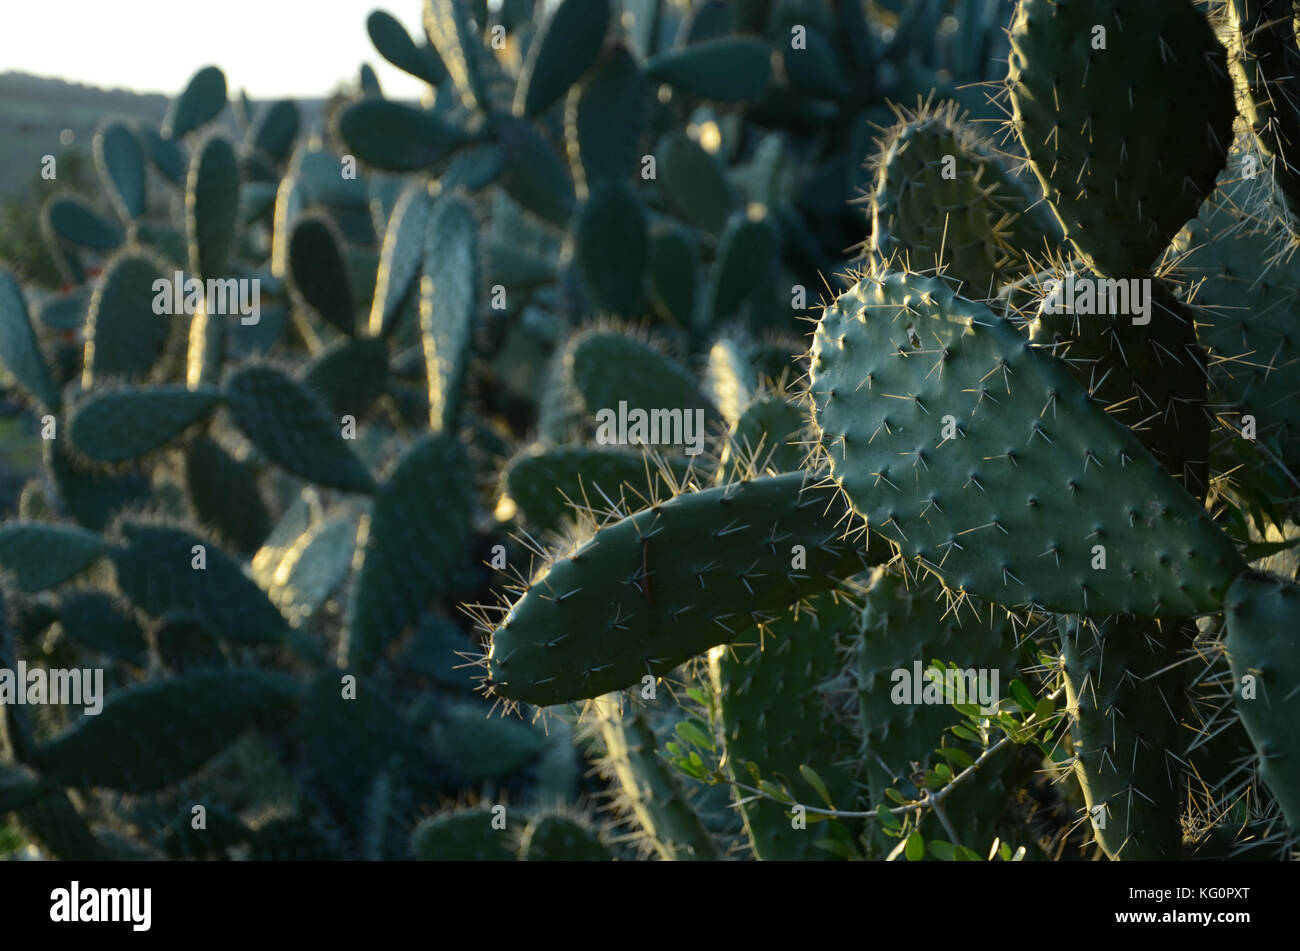 cactus Stock Photo